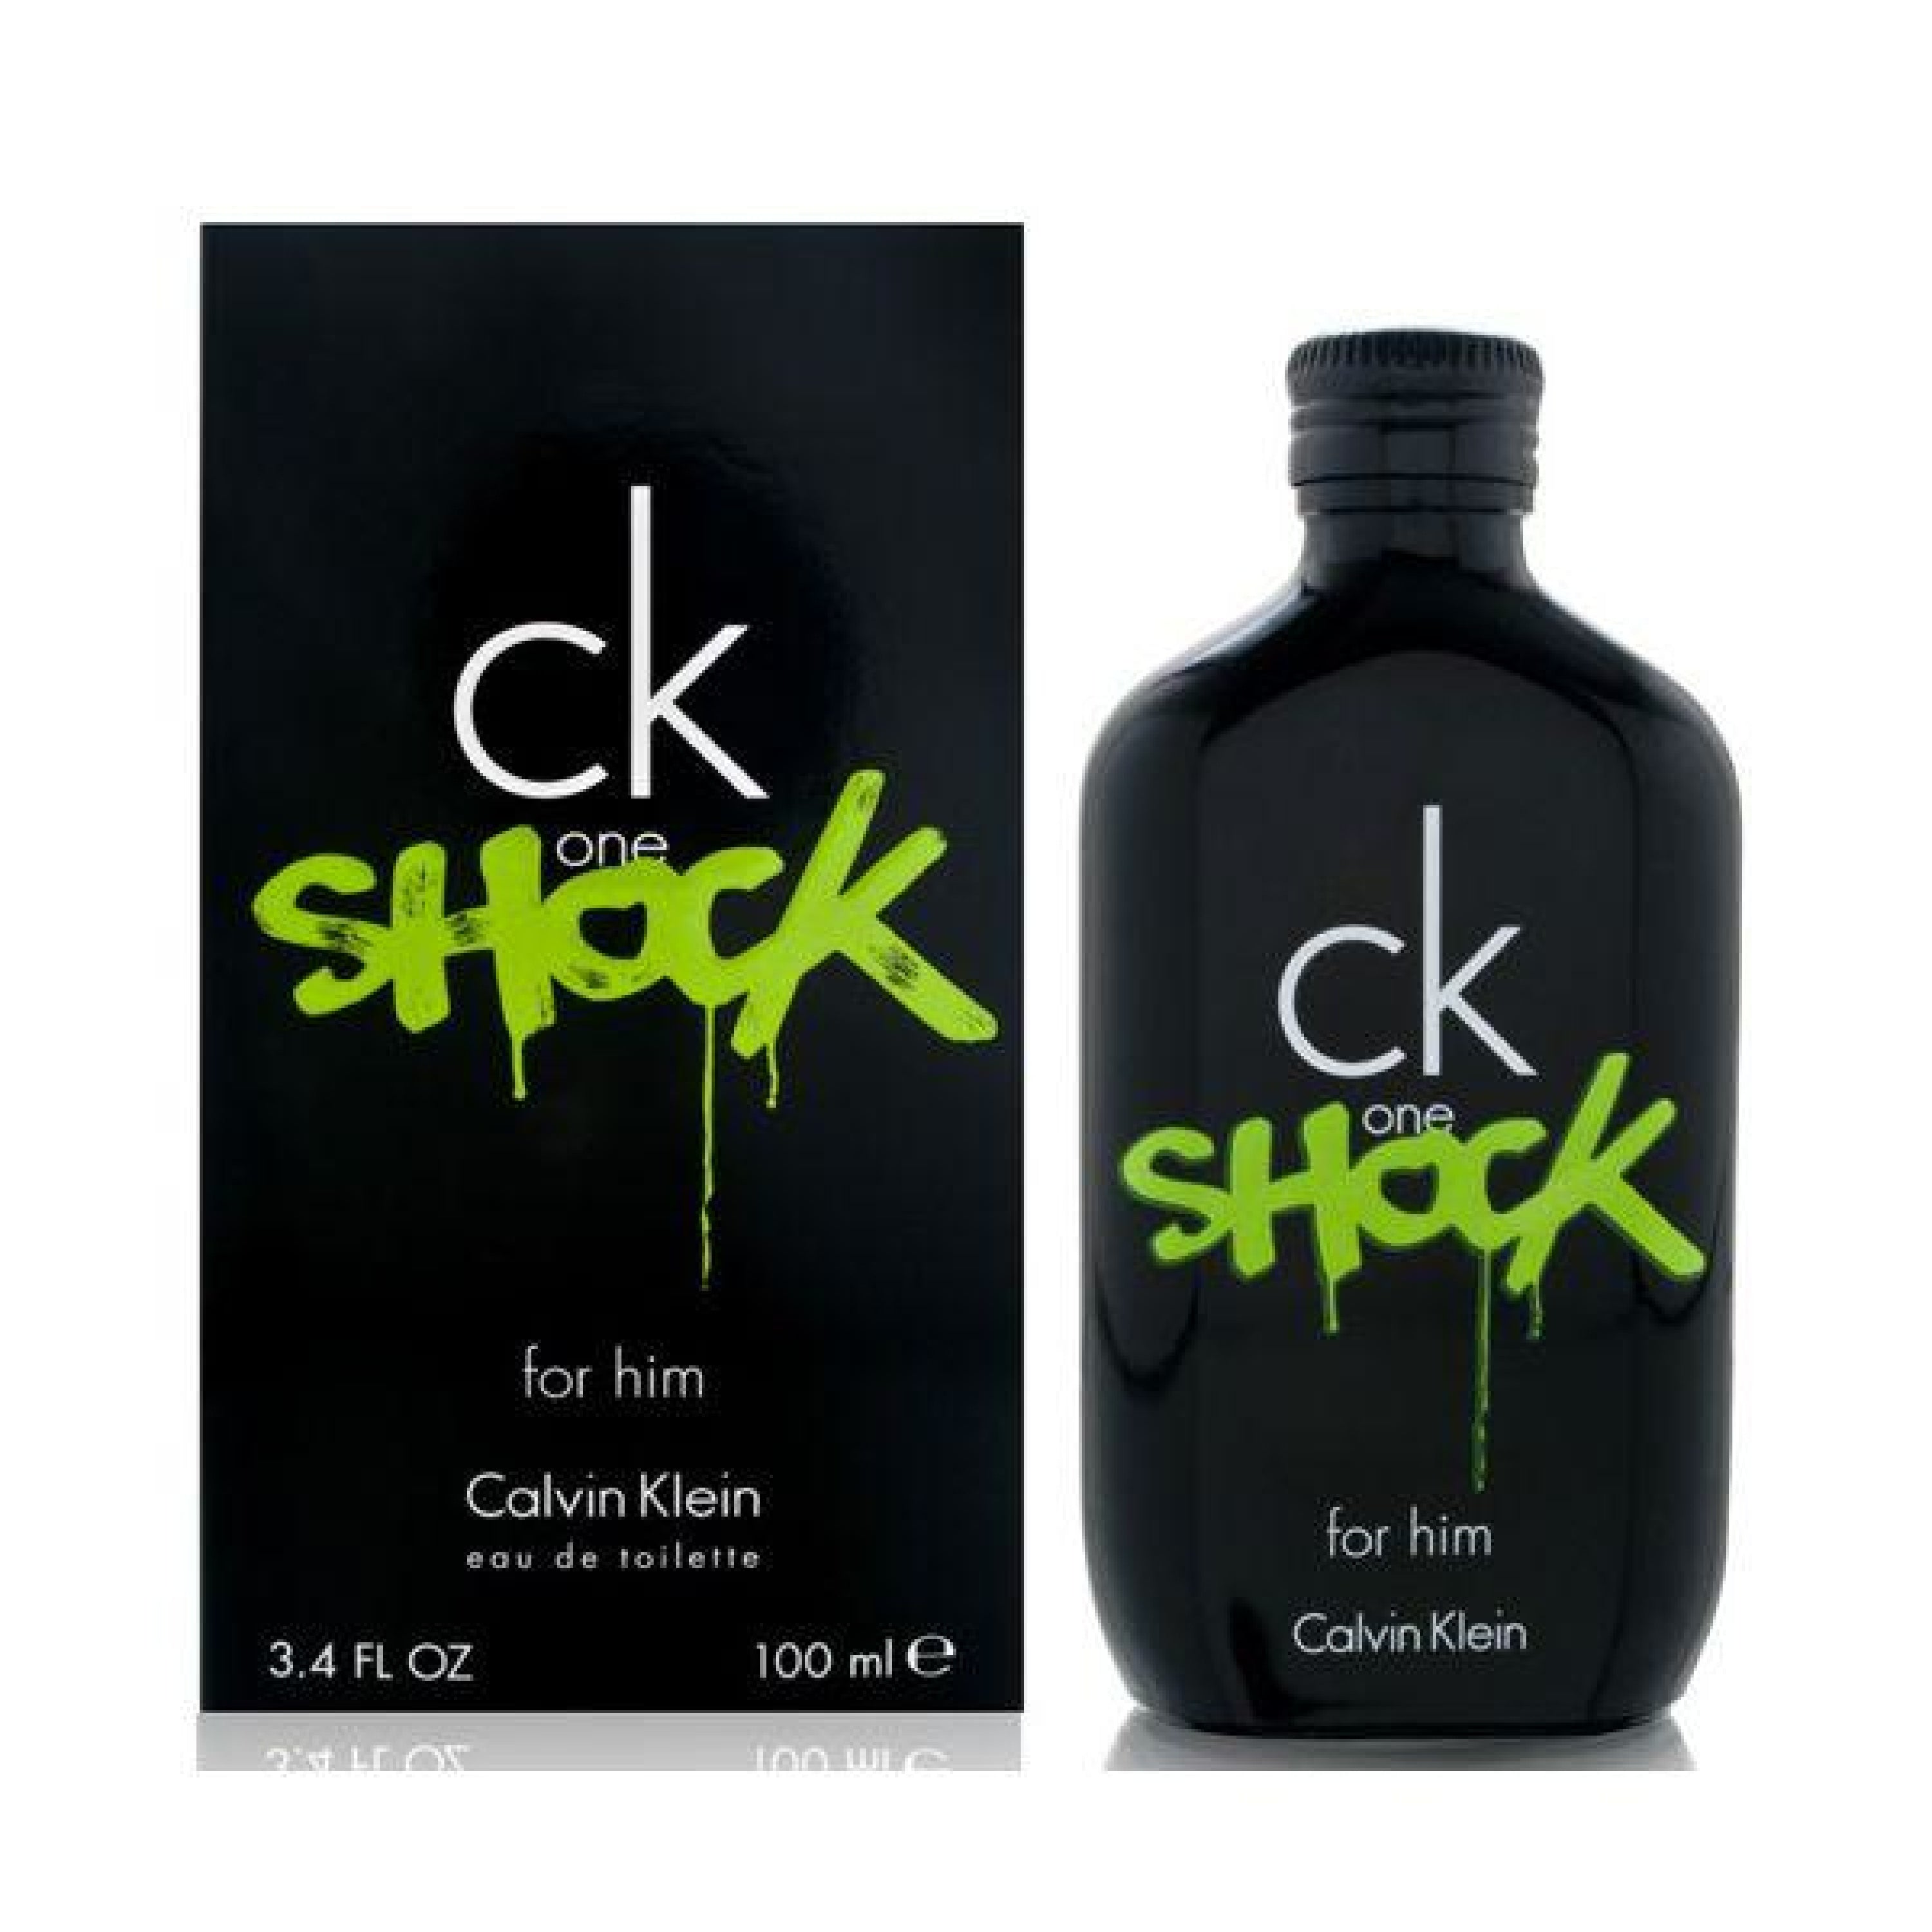 Calvin Klein CK One Eau de Toilette for Men